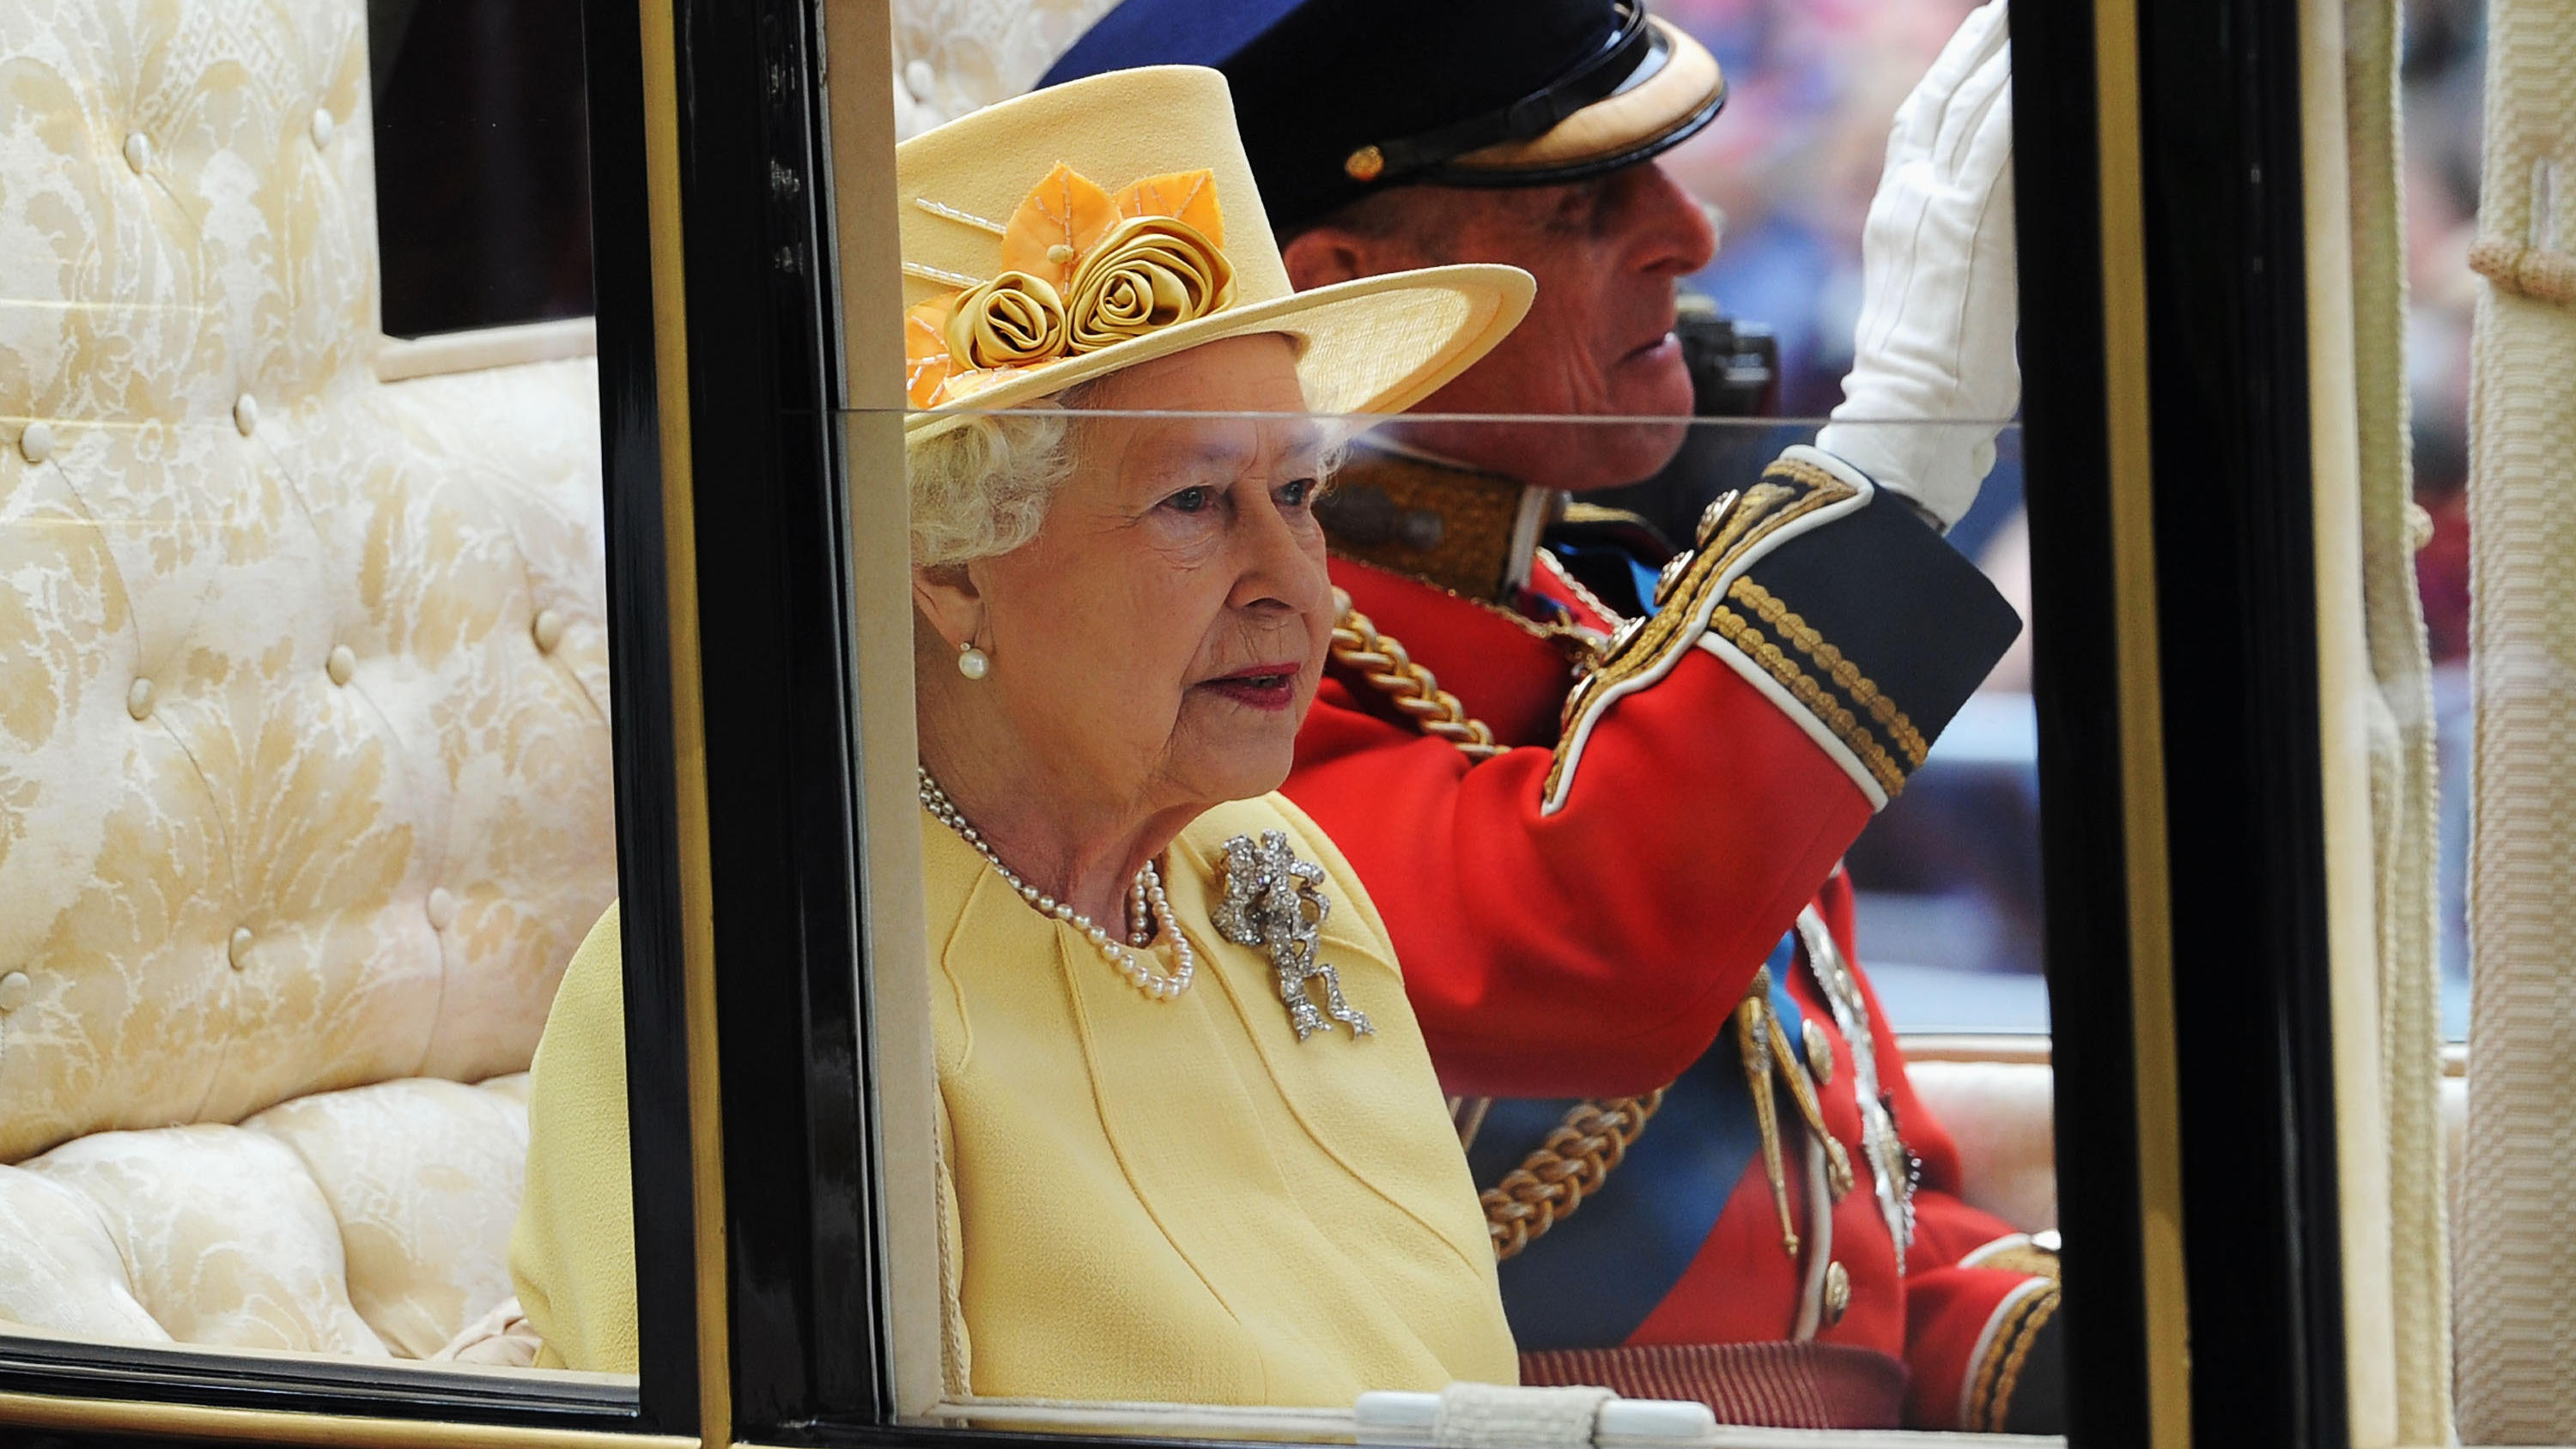 Not amused! Queen Elizabeth II. hatte bei der Hochzeit von Prinz William und Prinzessin Kate ein Loch im Handschuh.